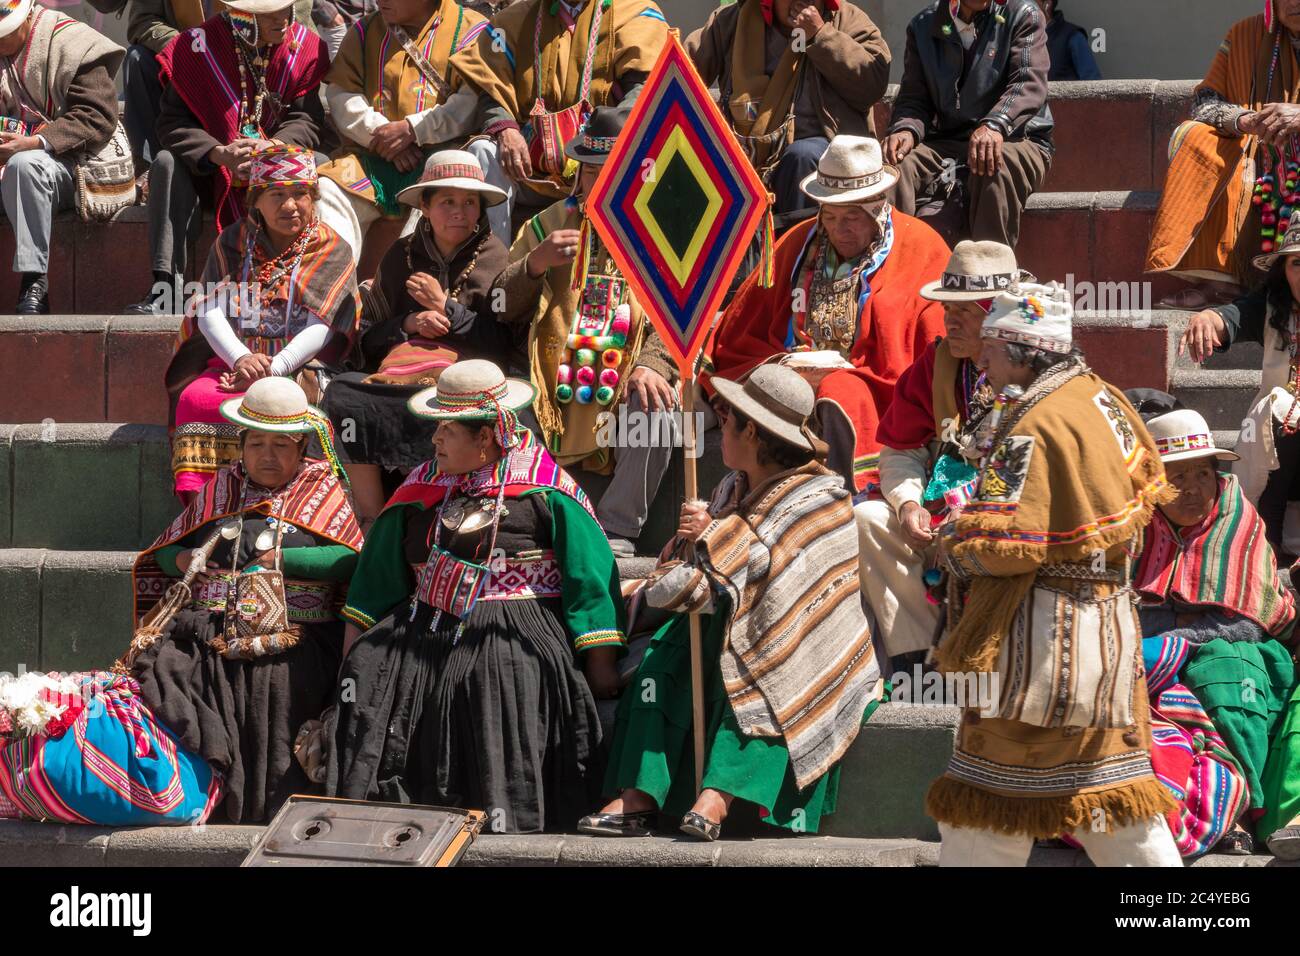 La Paz, Bolivia - 30 de septiembre de 2018: Brujo de medicina tradicional boliviano actúa en la plaza de San Francisco frente a una multitud de telas tradicionales Foto de stock